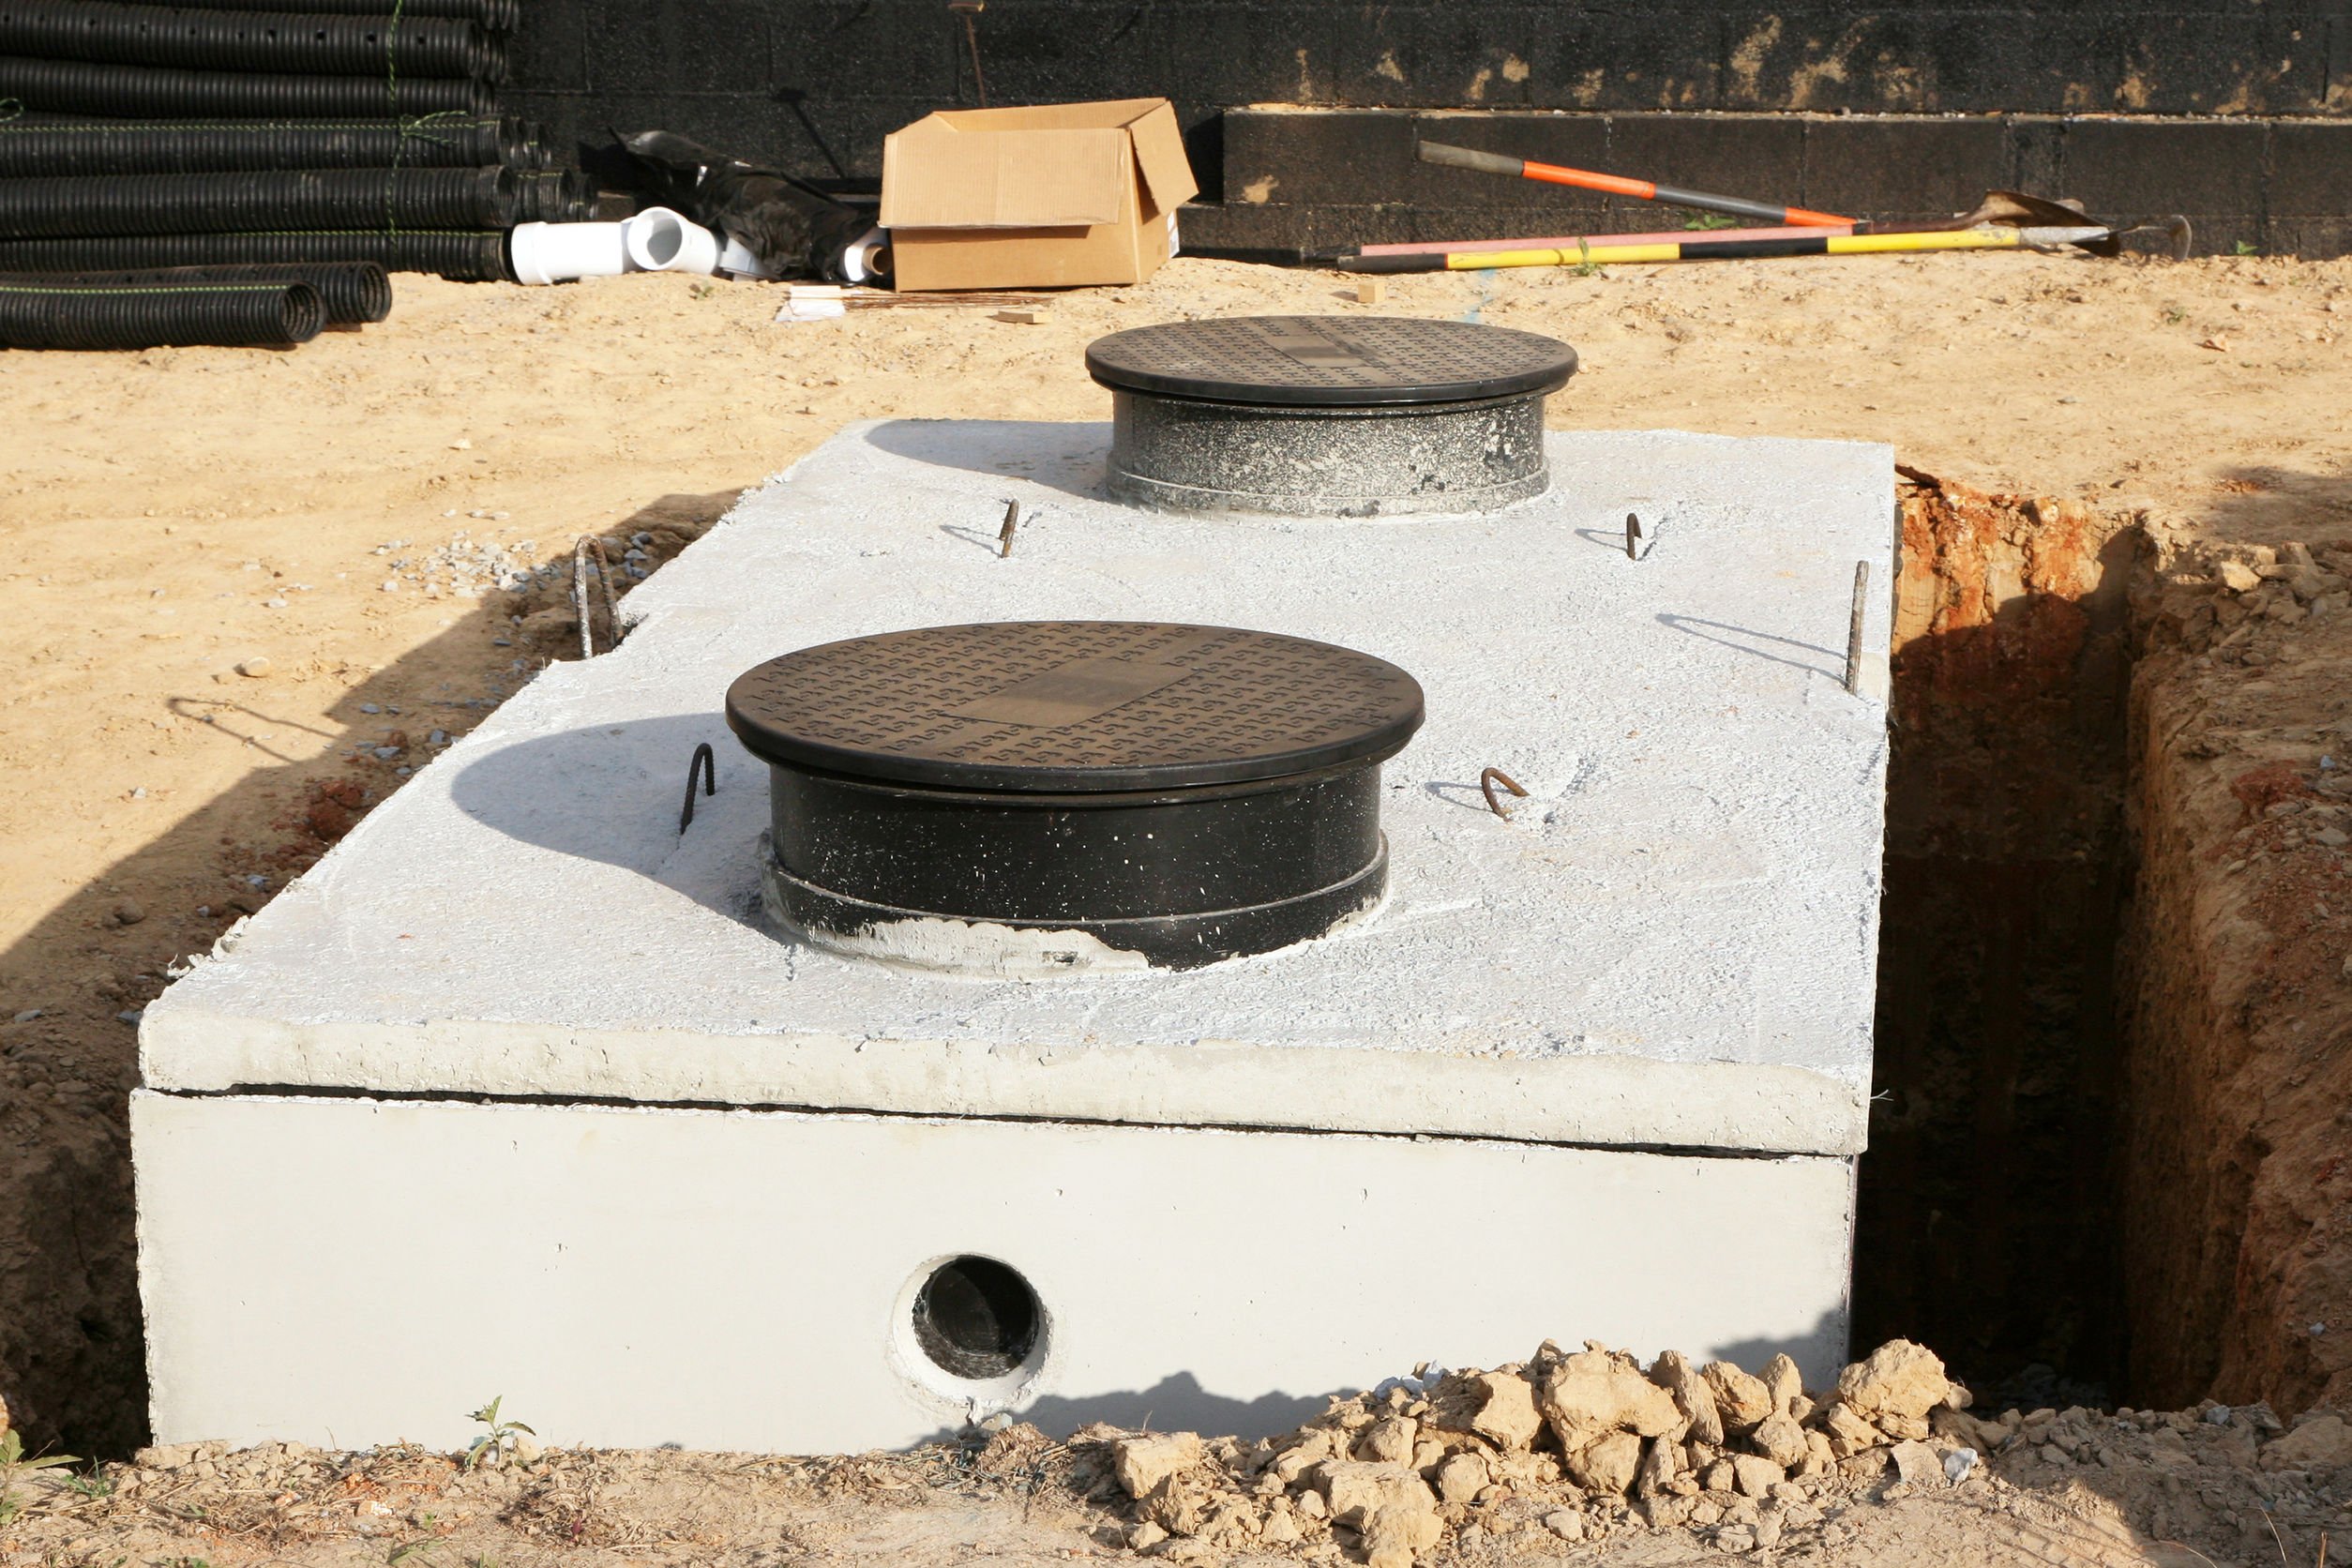 Installation et vidange d'une fosse septique en béton en cours d'installation dans le jardin d'une maison